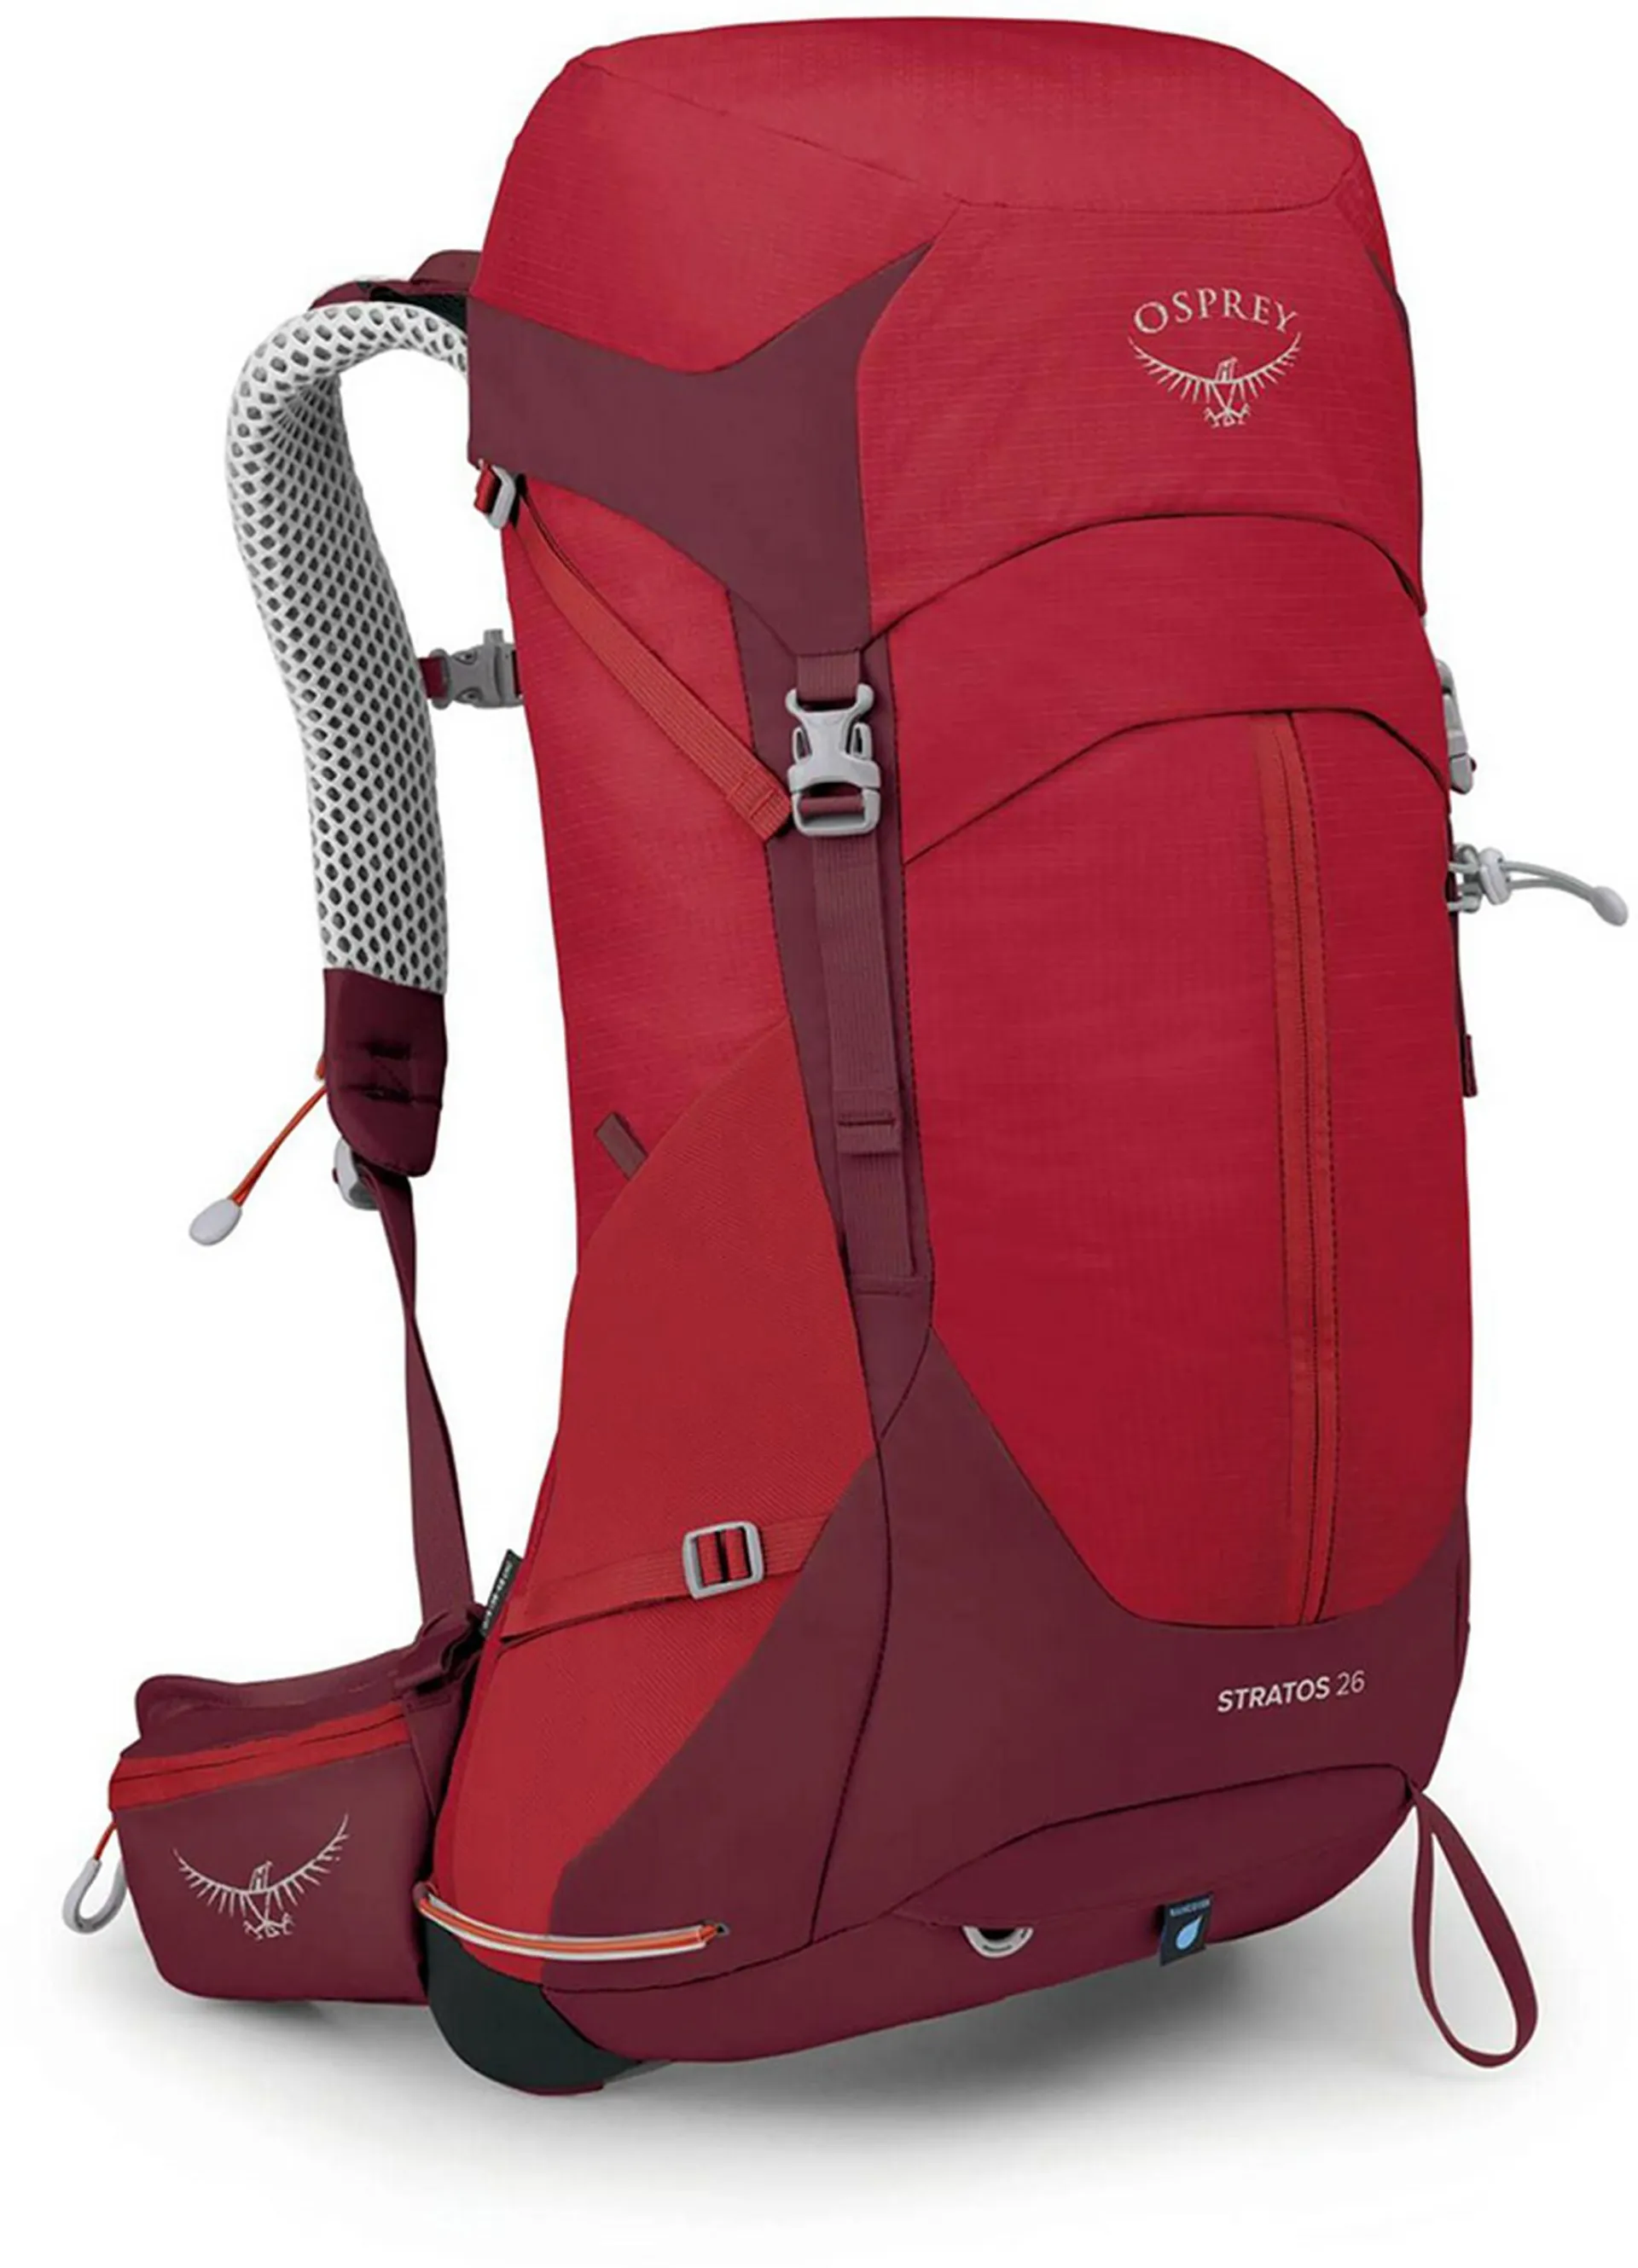 Osprey Stratos 26 Backpack